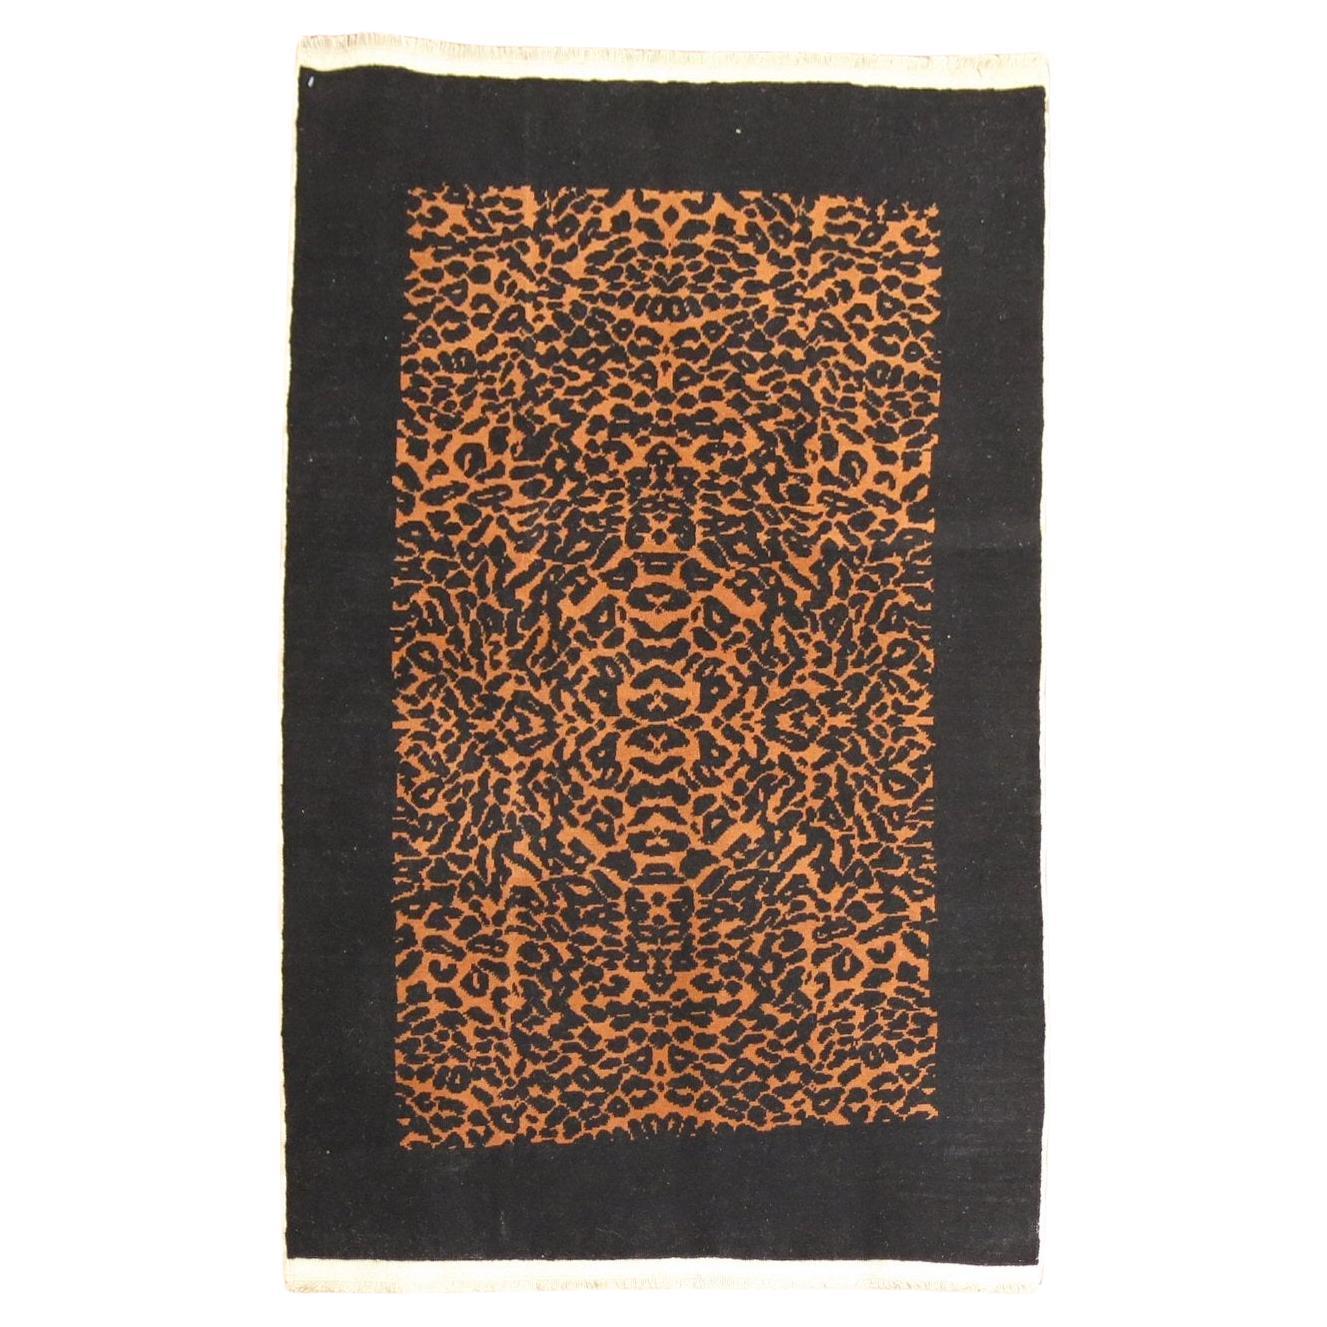 Zabihi Kollektion Leopard Vintage Türkischer kleiner Vintage-Teppich